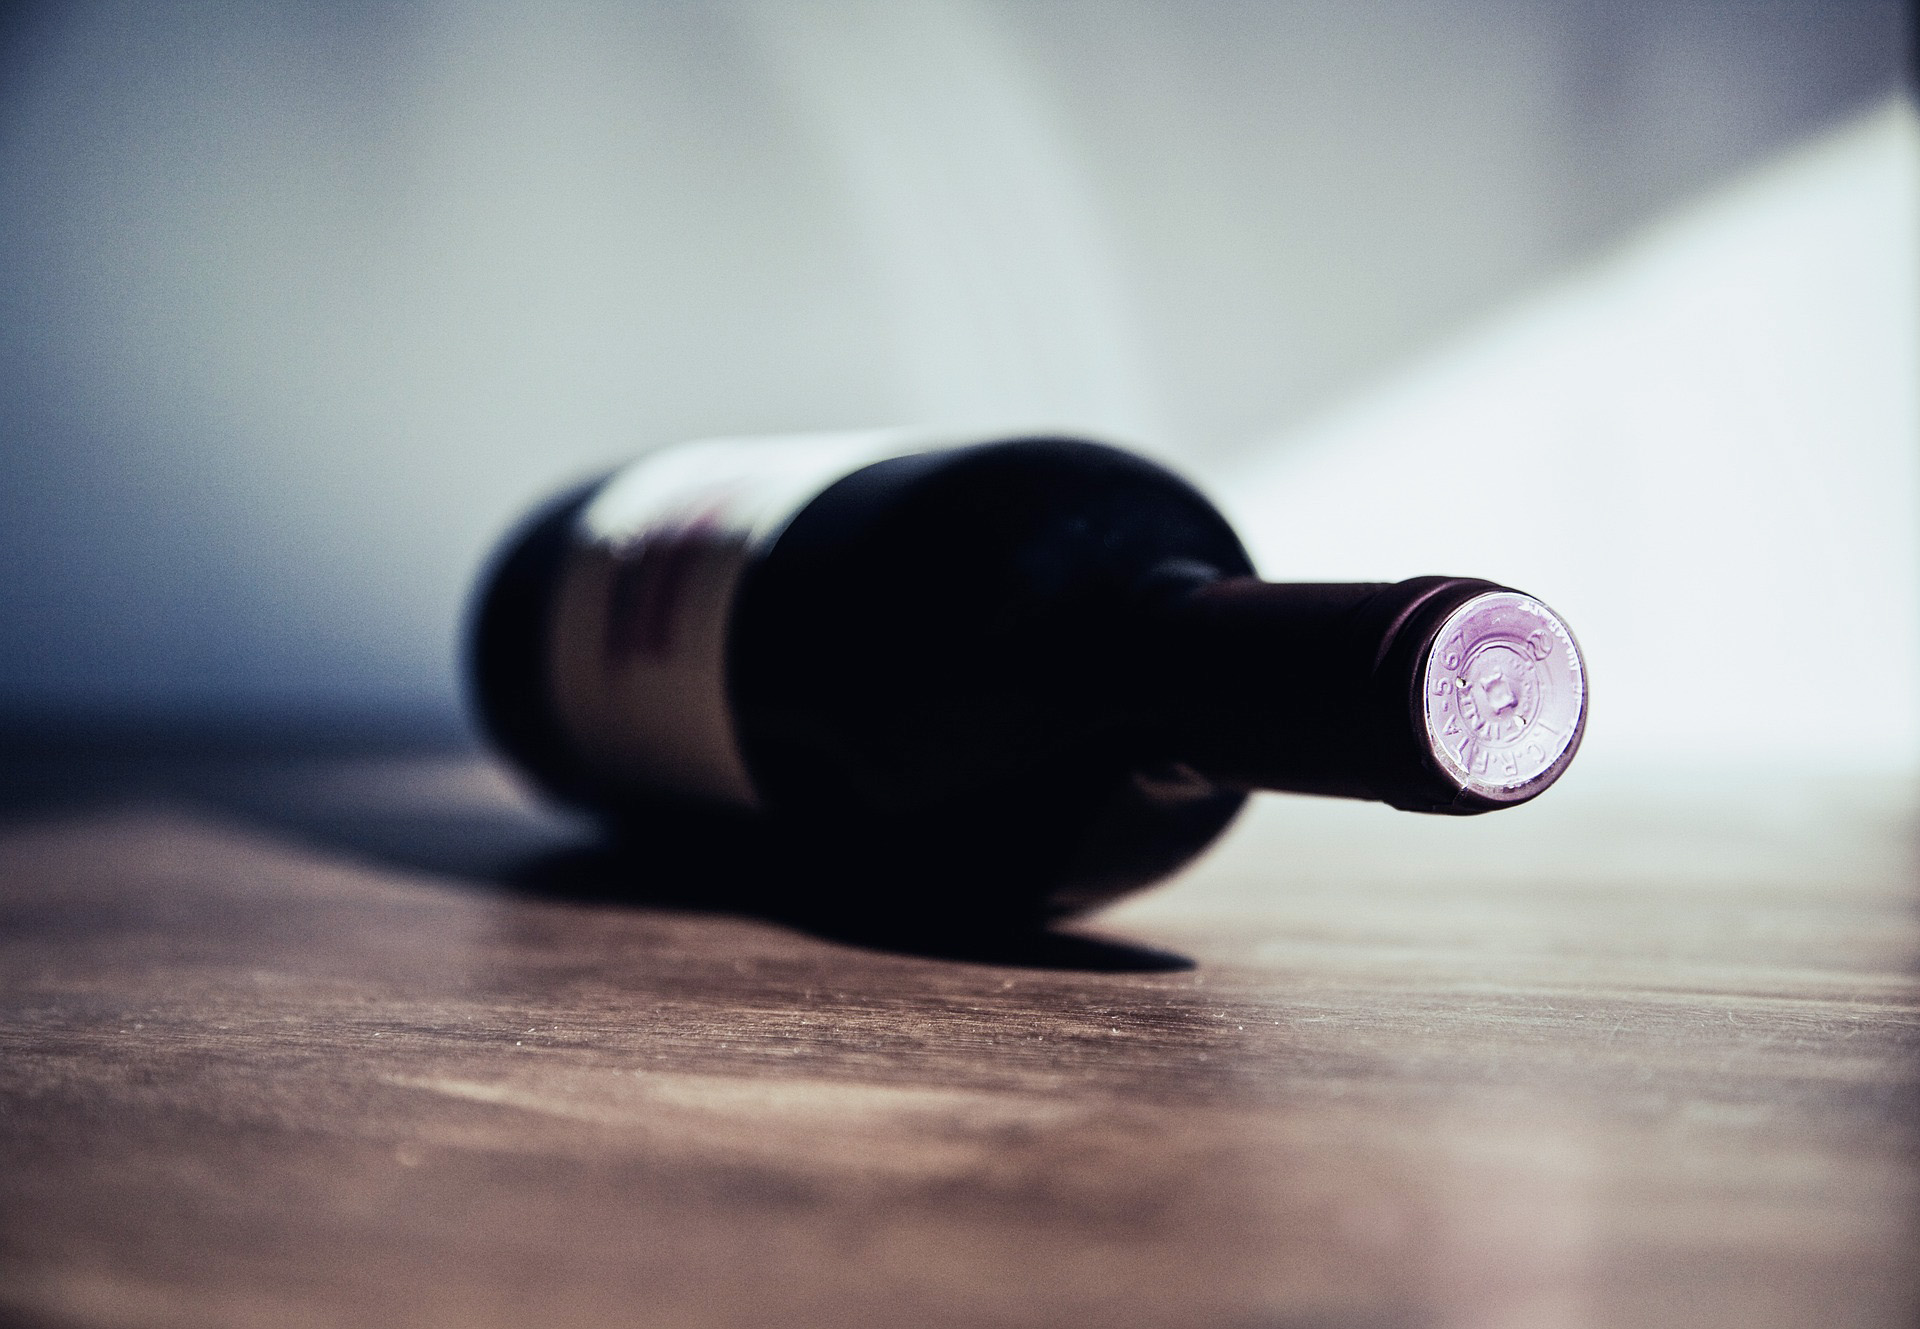 Alcoholische dranken: wat moet er op het etiket?